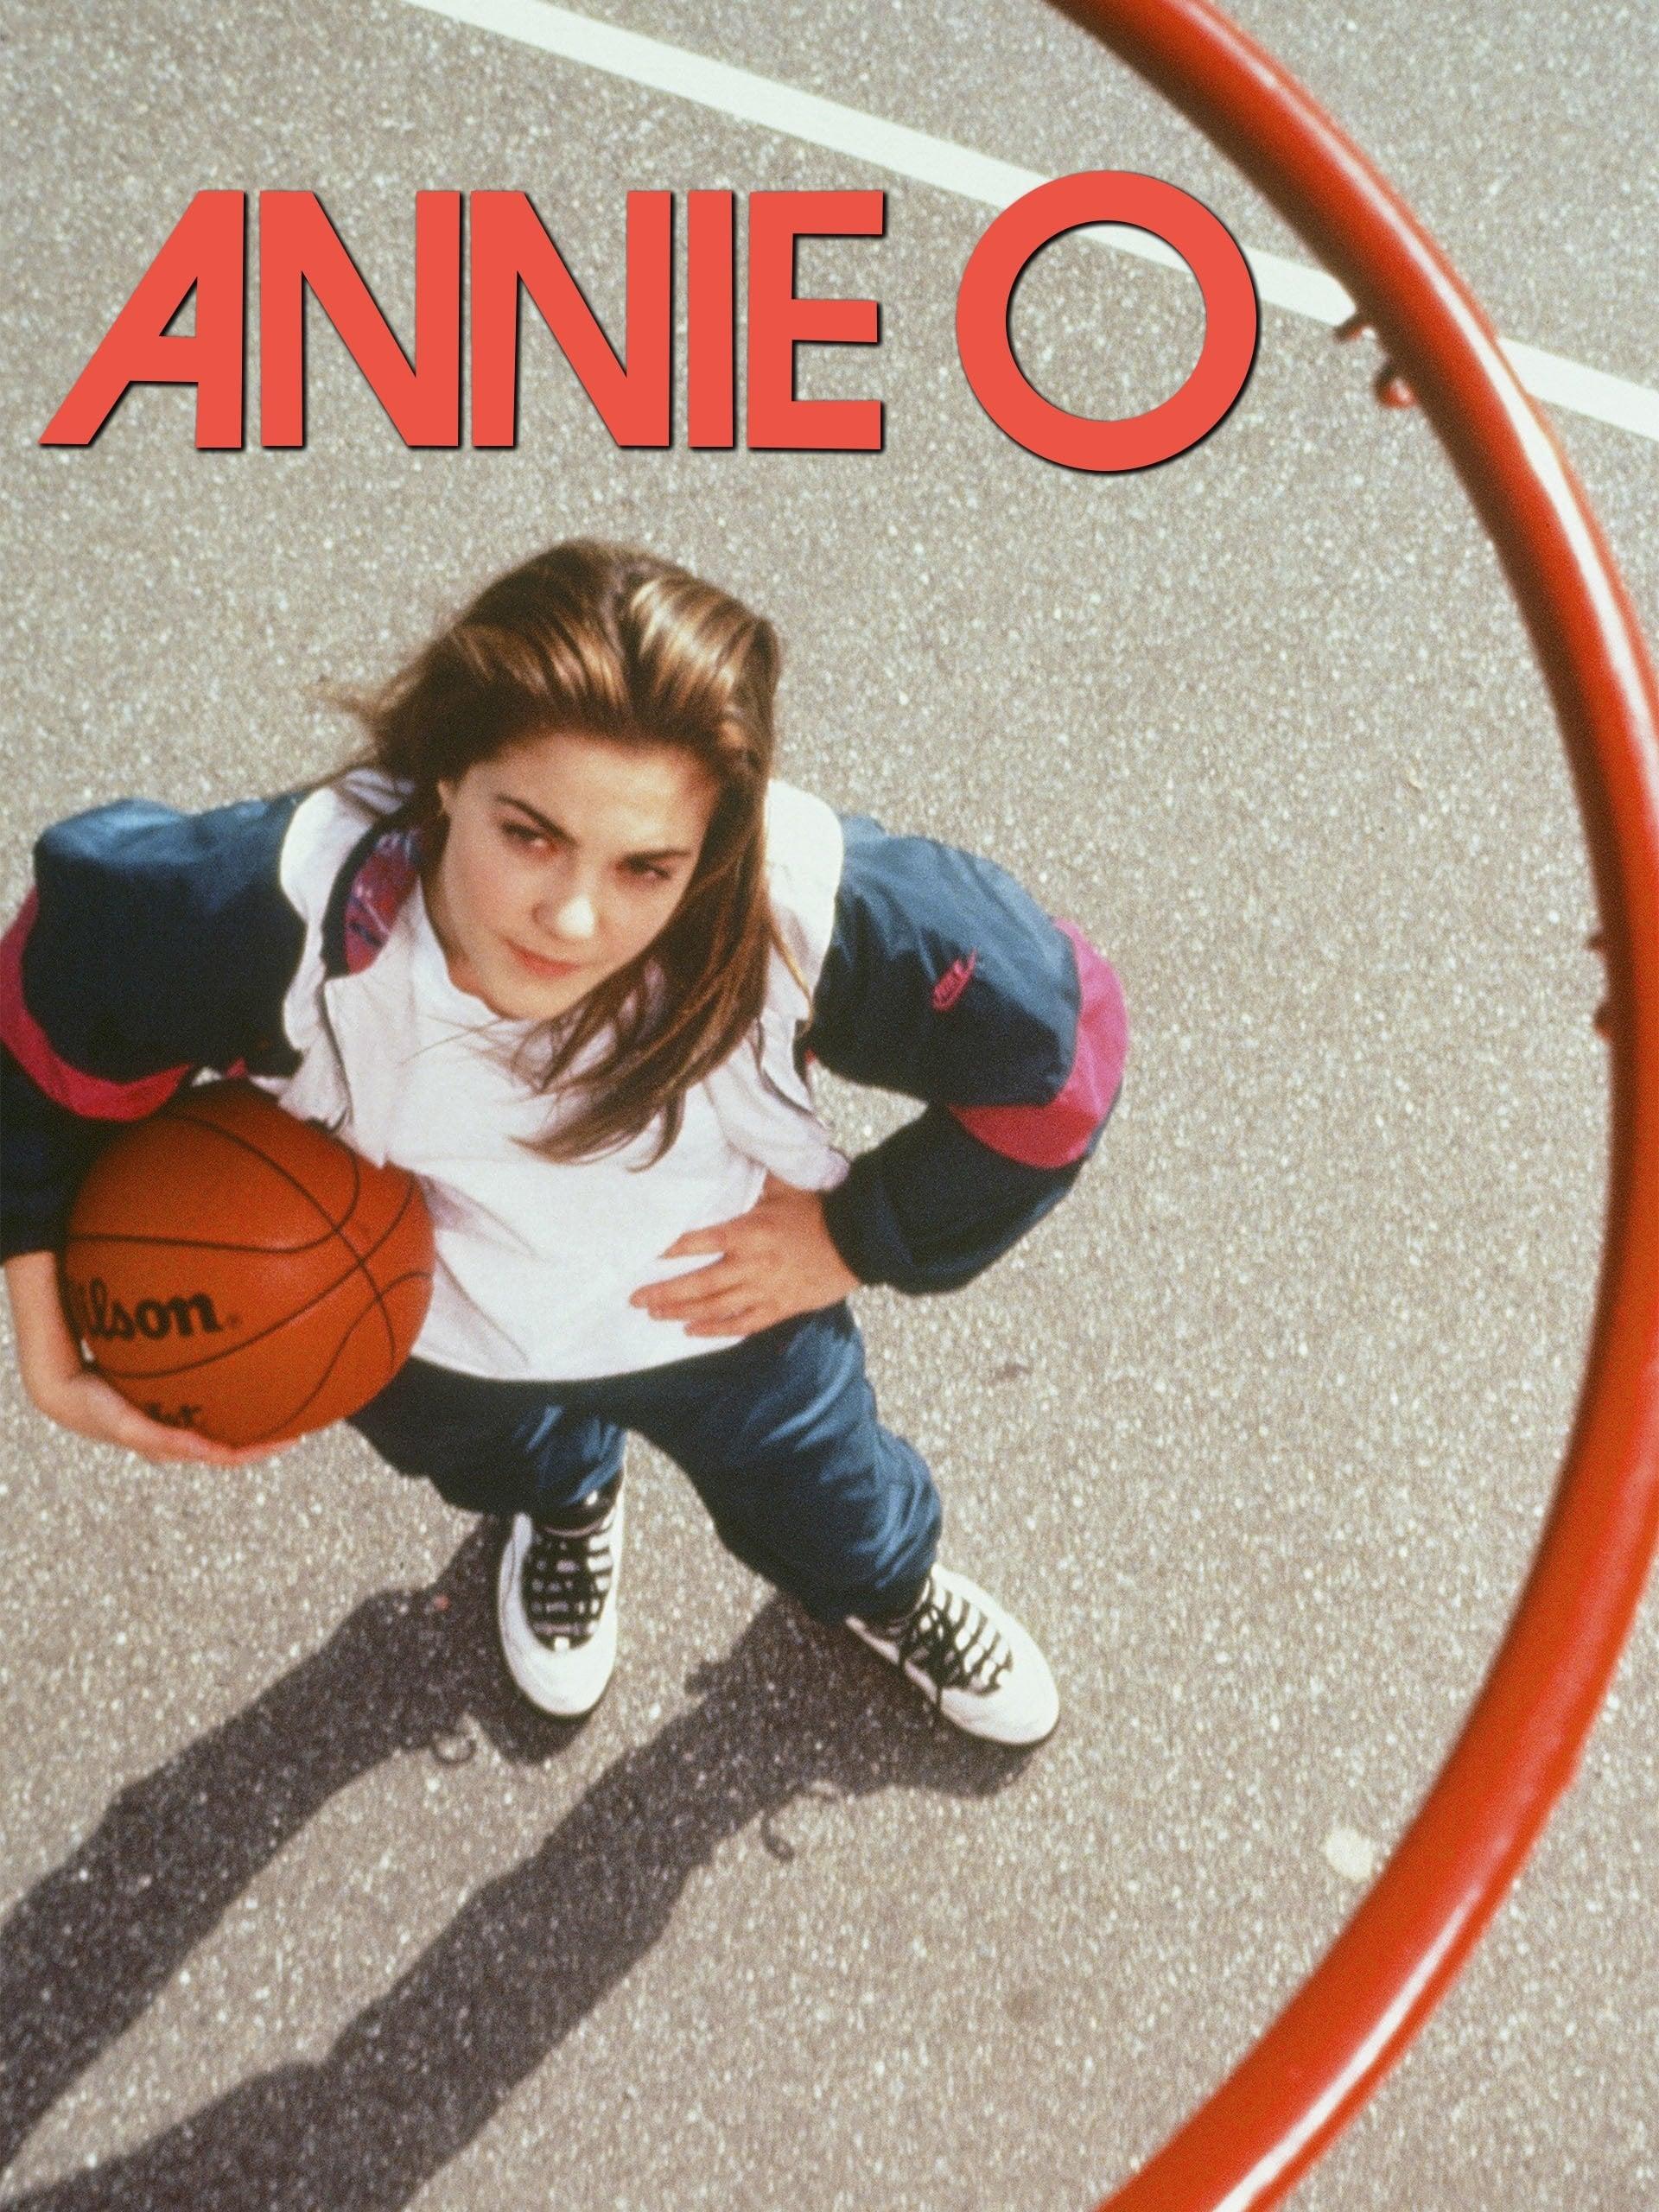 Annie O poster